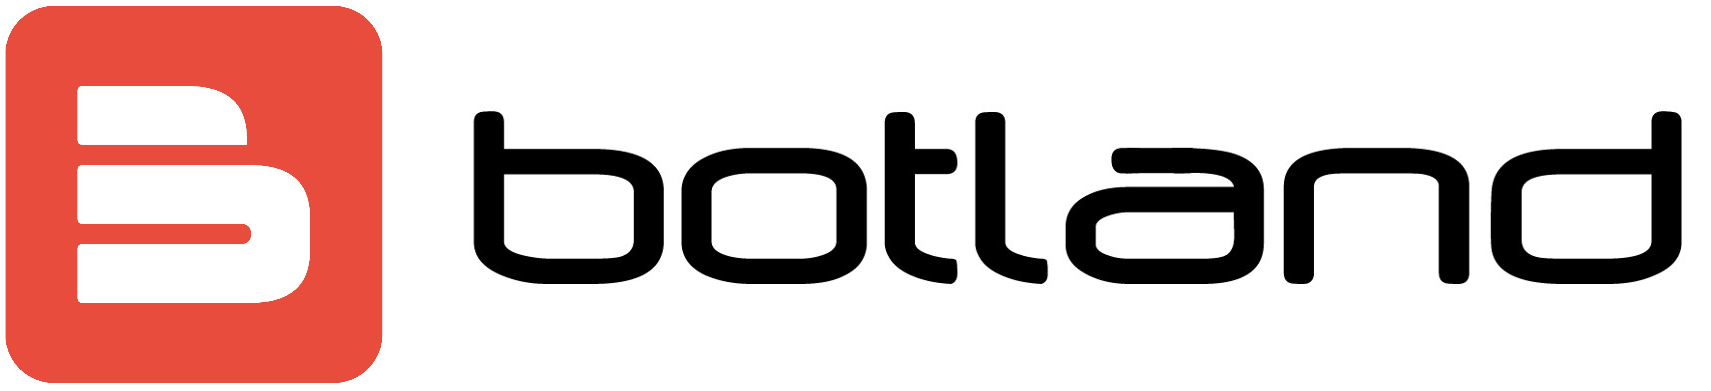 logo_botland